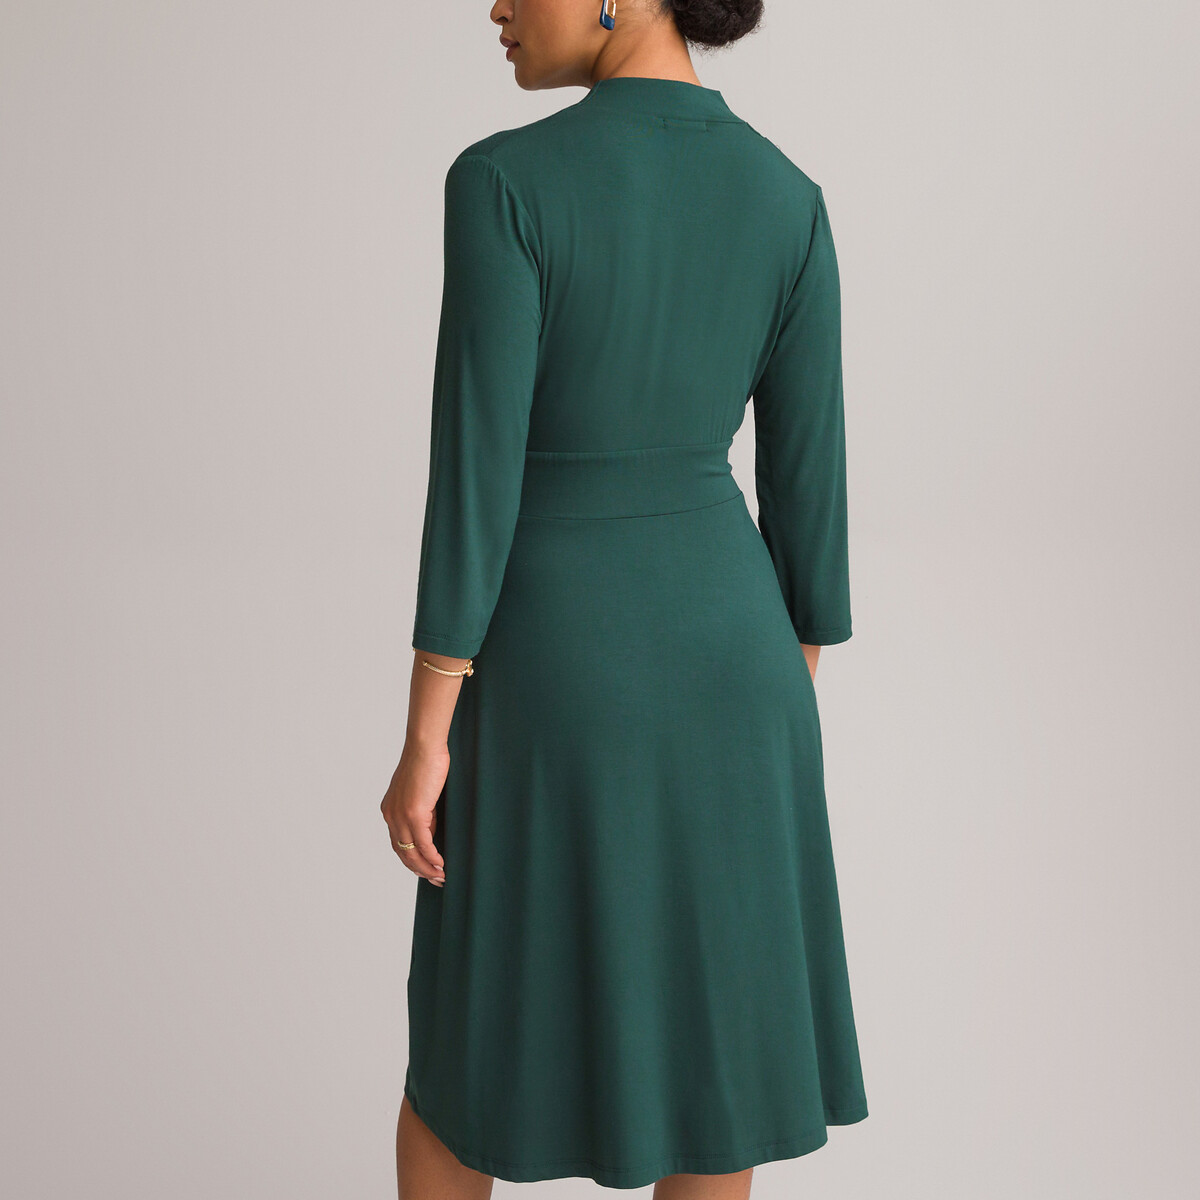 Платье ANNE WEYBURN Платье Расклешенное из струящегося трикотажа с рукавами 34 46 зеленый, размер 46 - фото 4